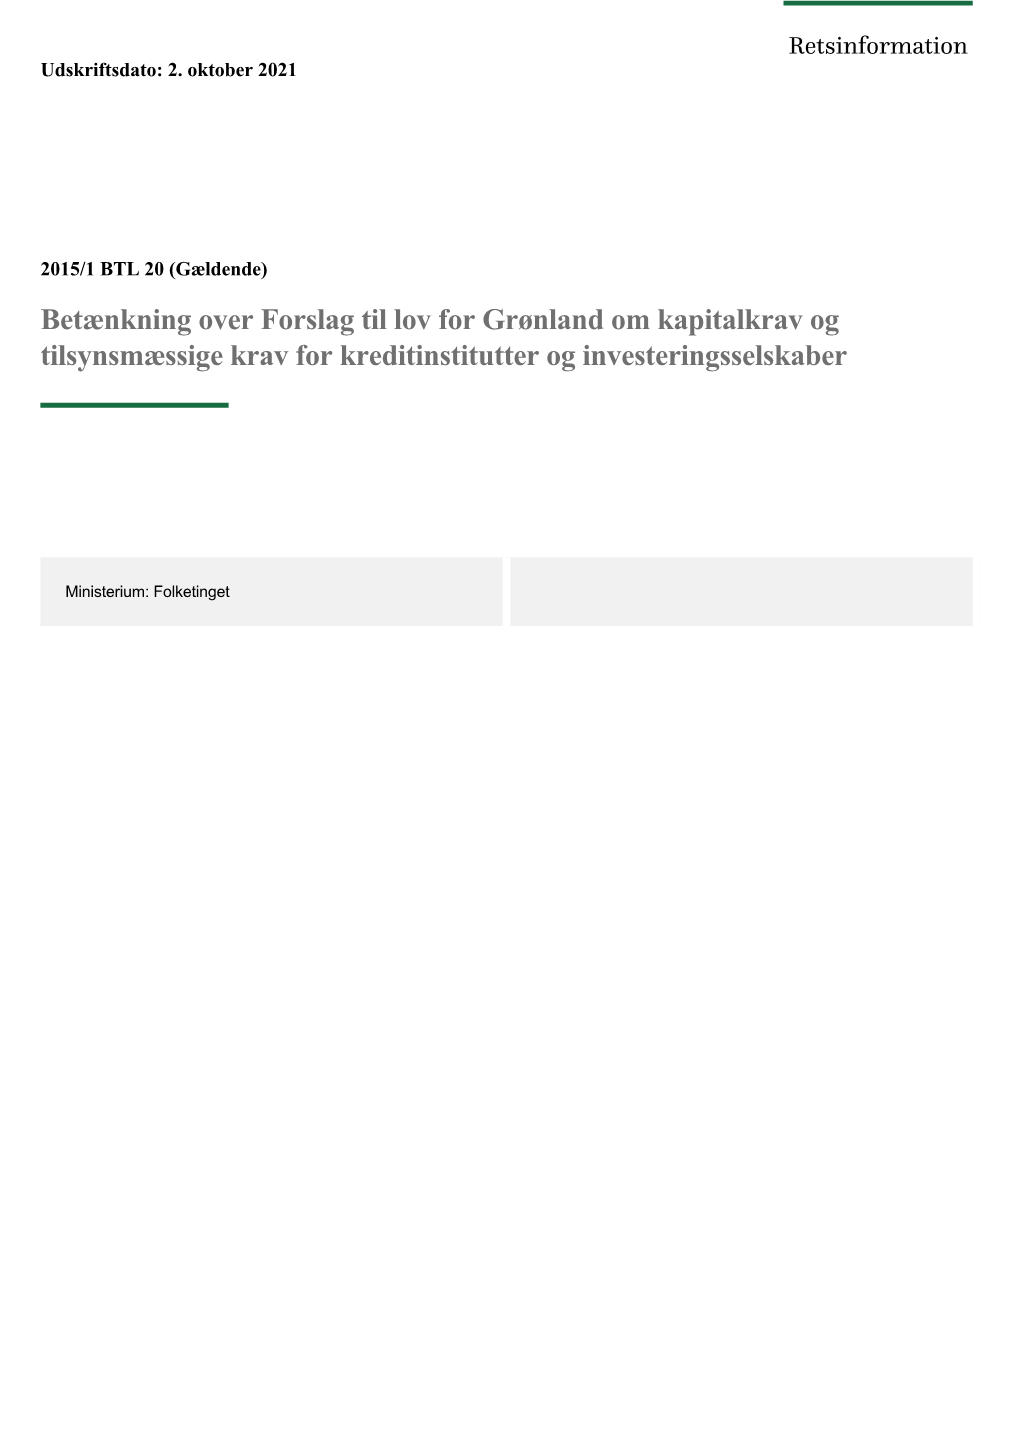 Betænkning Over Forslag Til Lov for Grønland Om Kapitalkrav Og Tilsynsmæssige Krav for Kreditinstitutter Og Investeringsselskaber